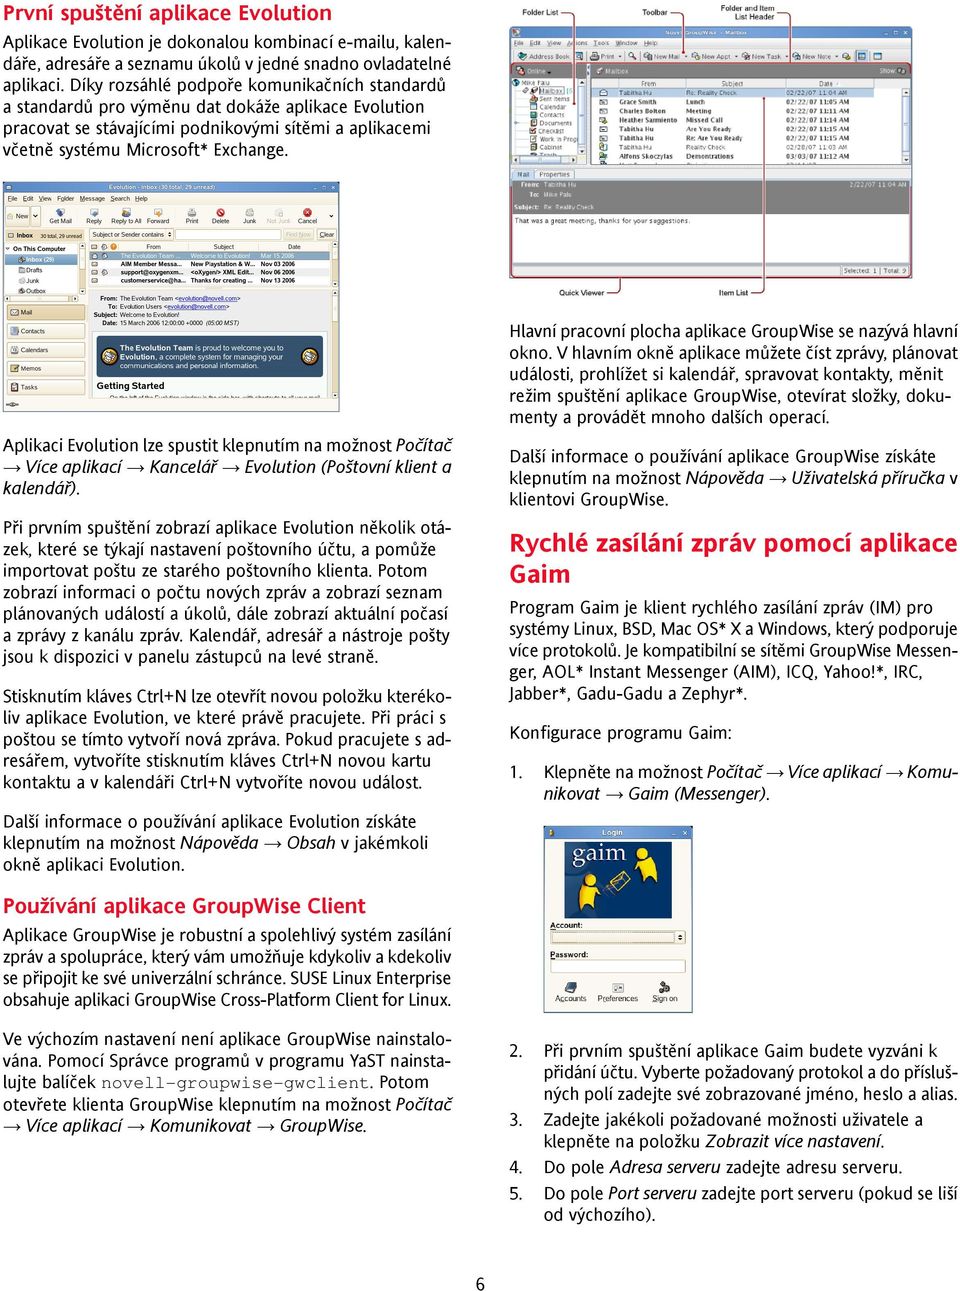 Aplikaci Evolution lze spustit klepnutím na možnost Počítač Více aplikací Kancelář Evolution (Poštovní klient a kalendář).